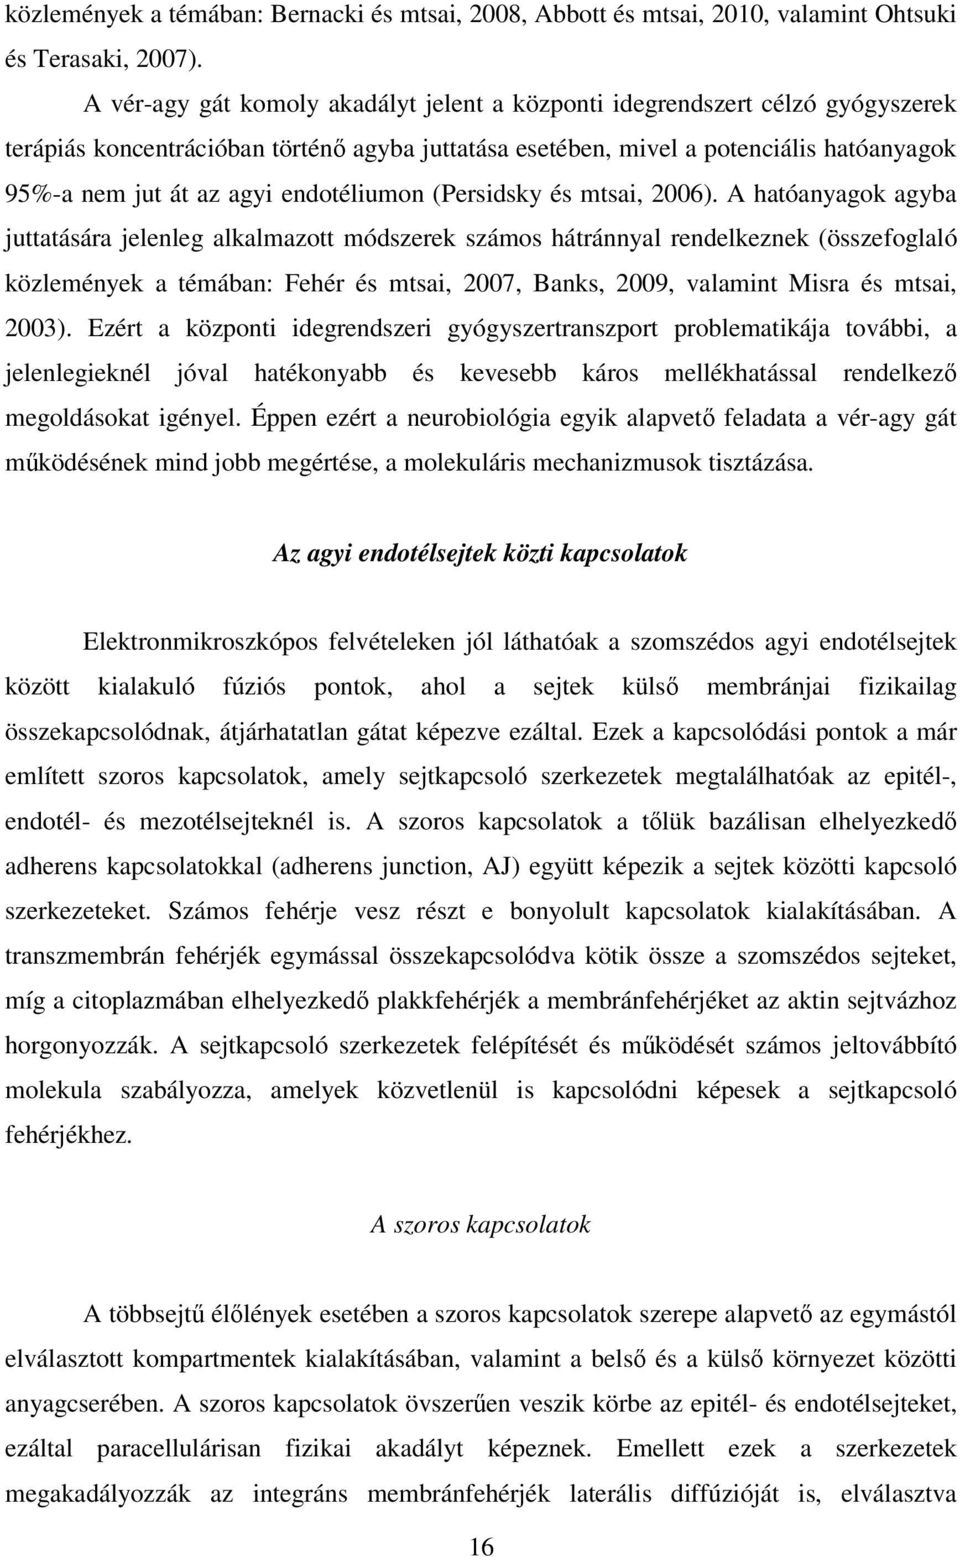 endotéliumon (Persidsky és mtsai, 2006).